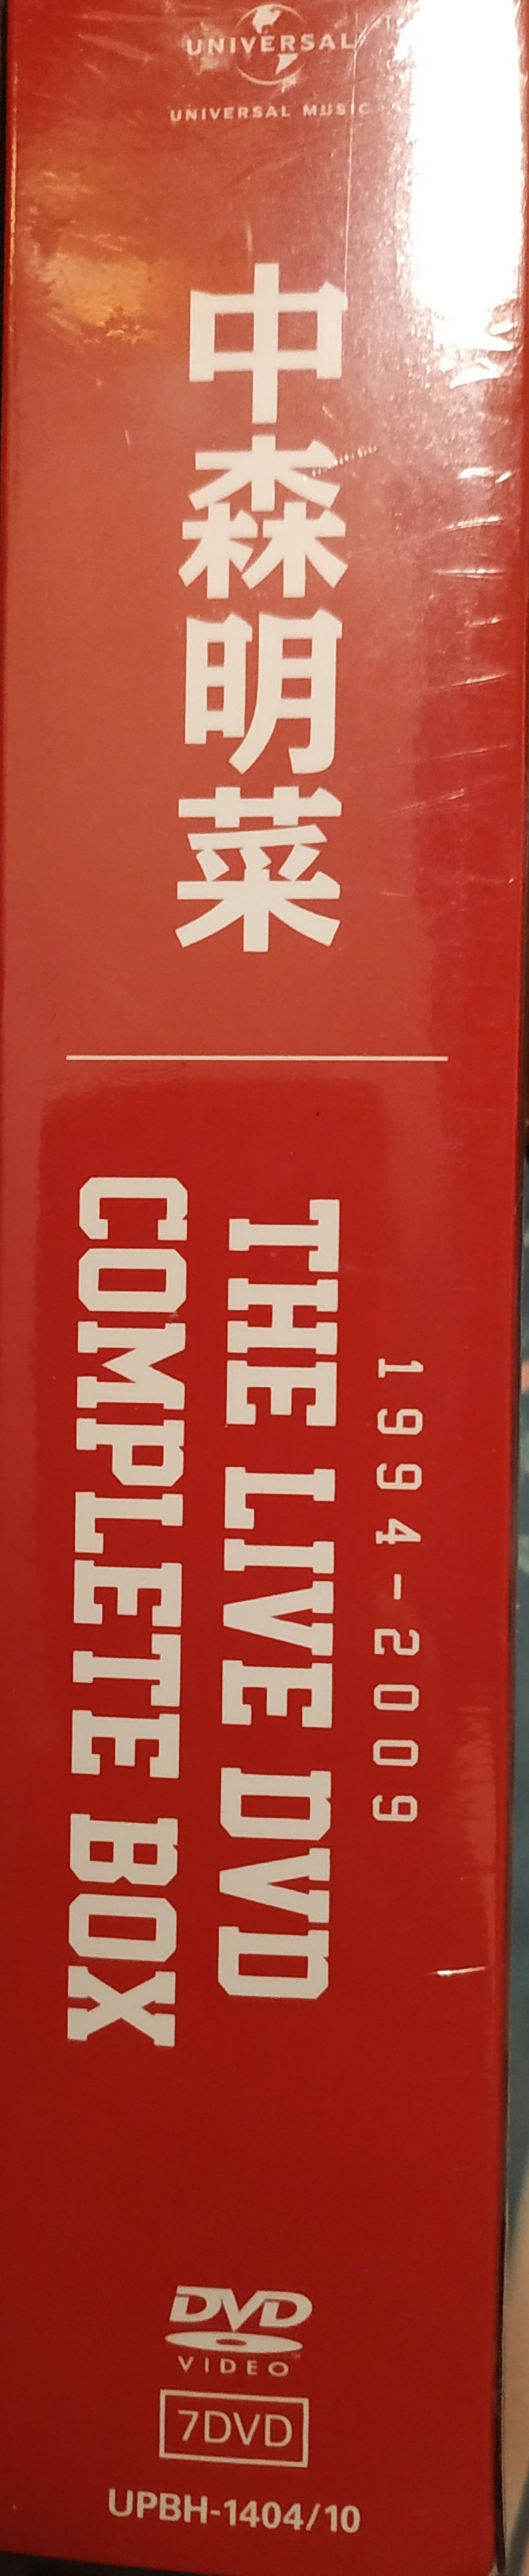 日版全新未拆已絕版 --- 中森明菜 THE LIVE DVD COMPLETE BOX ( 7 DVDs )